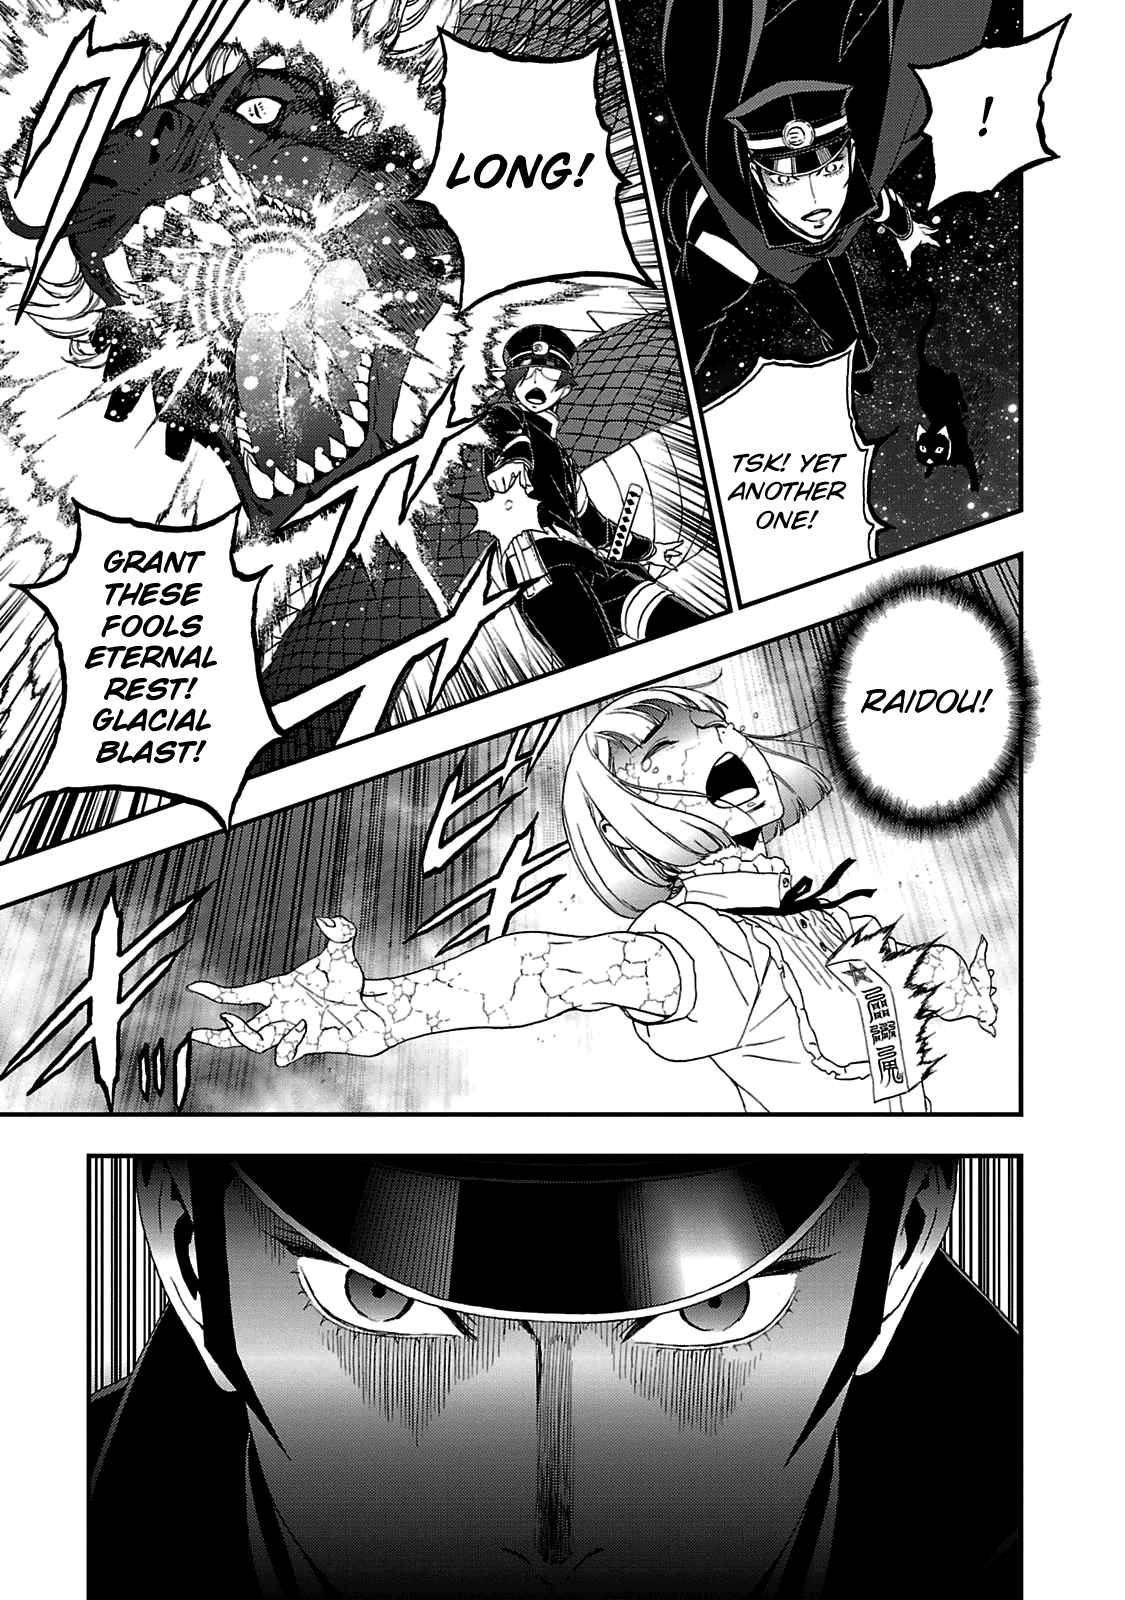 Shin Megami Tensei: Devil Summoner Kuzunoha Raidou Tai Kodokuno Marebito Vol. 5 Ch. 27 Betrayal at the Altar